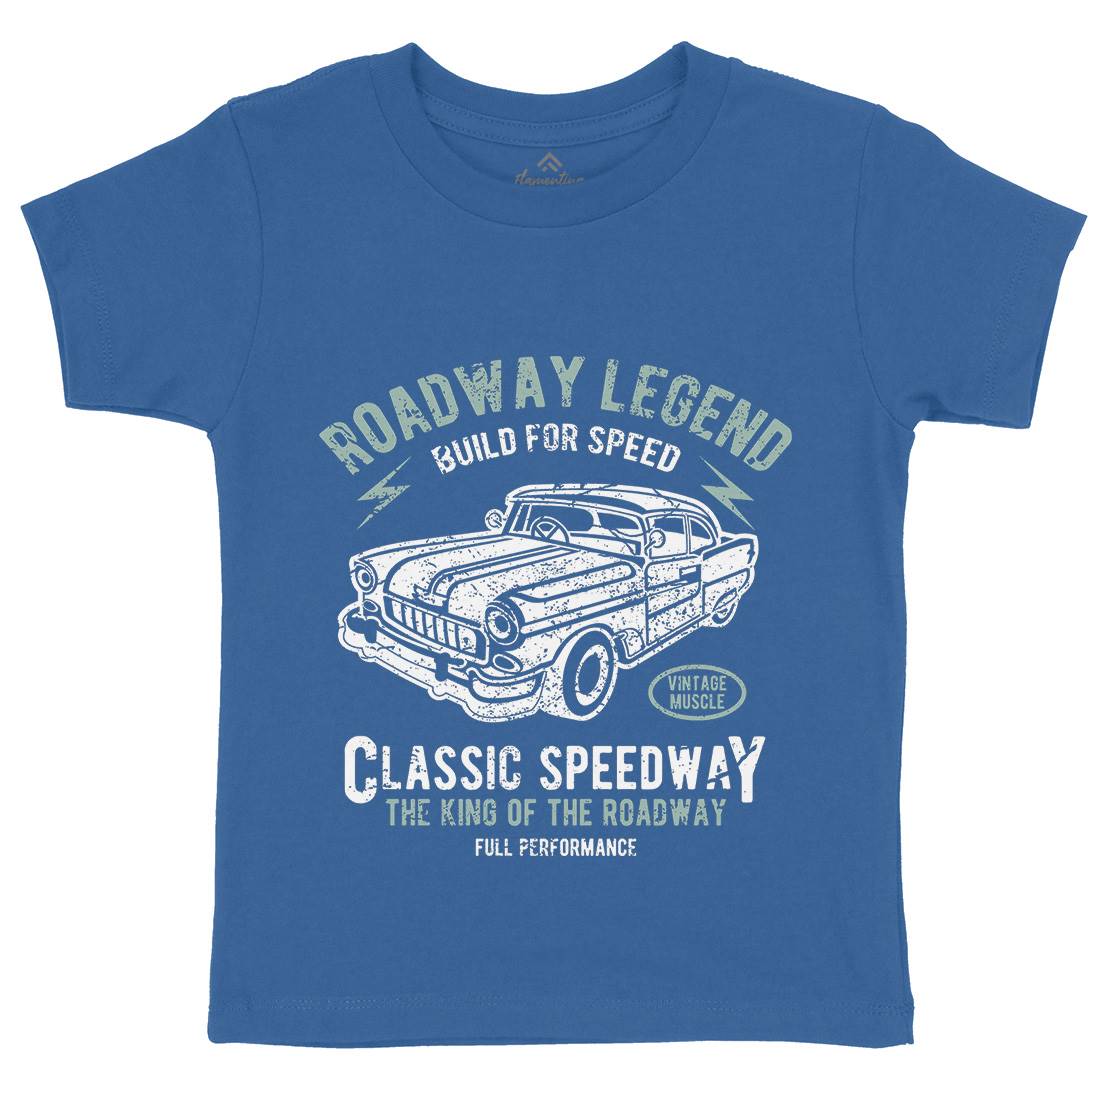 Roadway Legend Kids Organic Crew Neck T-Shirt Cars A124